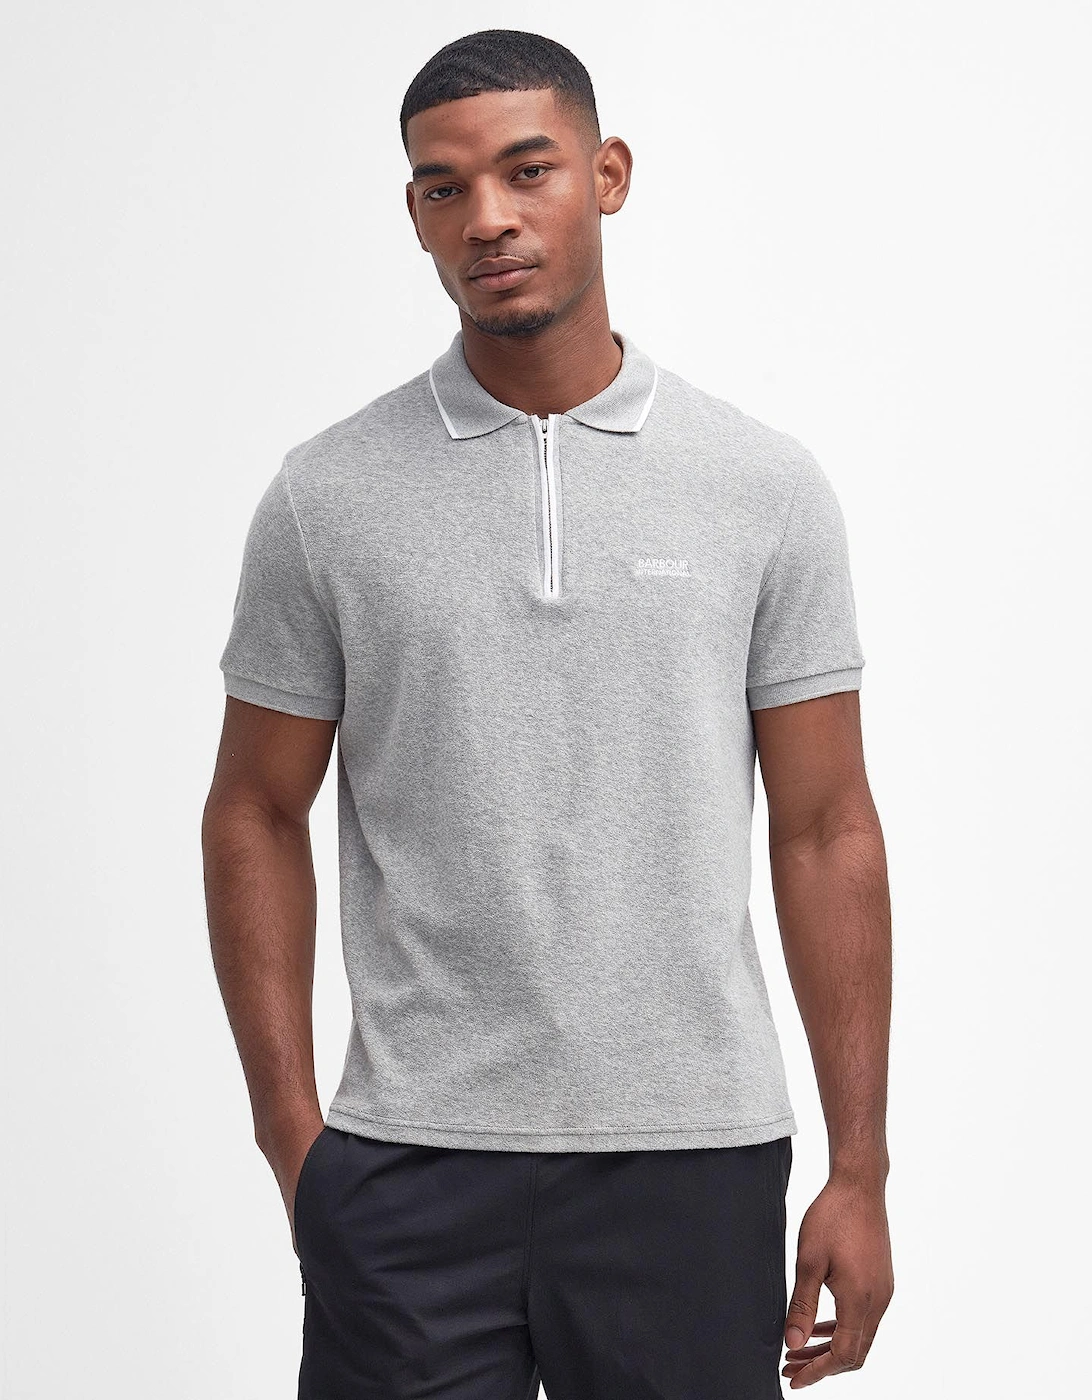 Wilton Polo Shirt GY52 Grey